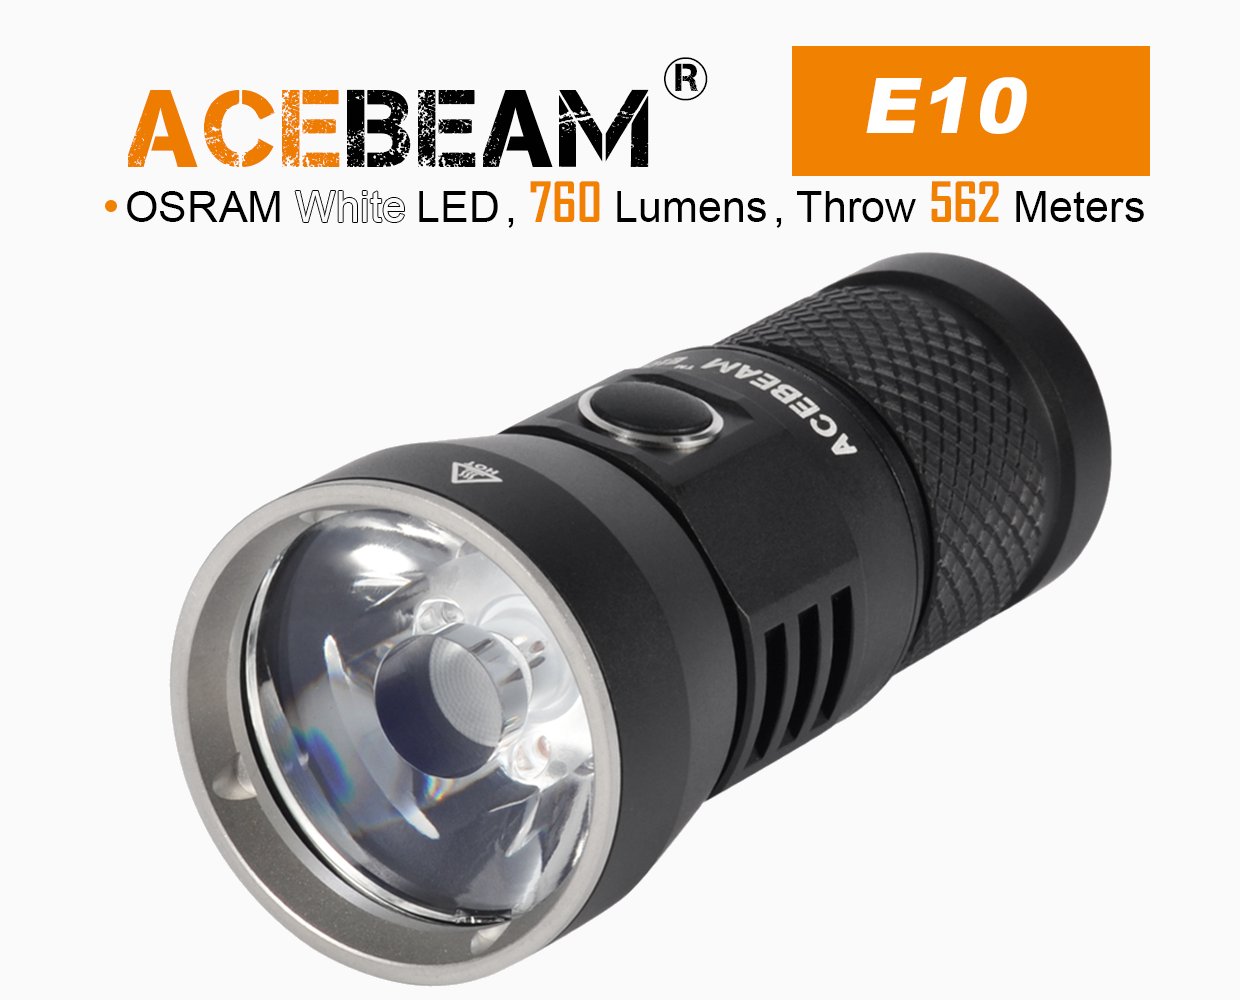 Produktbild von Acebeam E10, OSRAM weißlicht LED, 760 Lumen, 562m Leuchtweite - Wiederaufladbare LED Taschenlampe